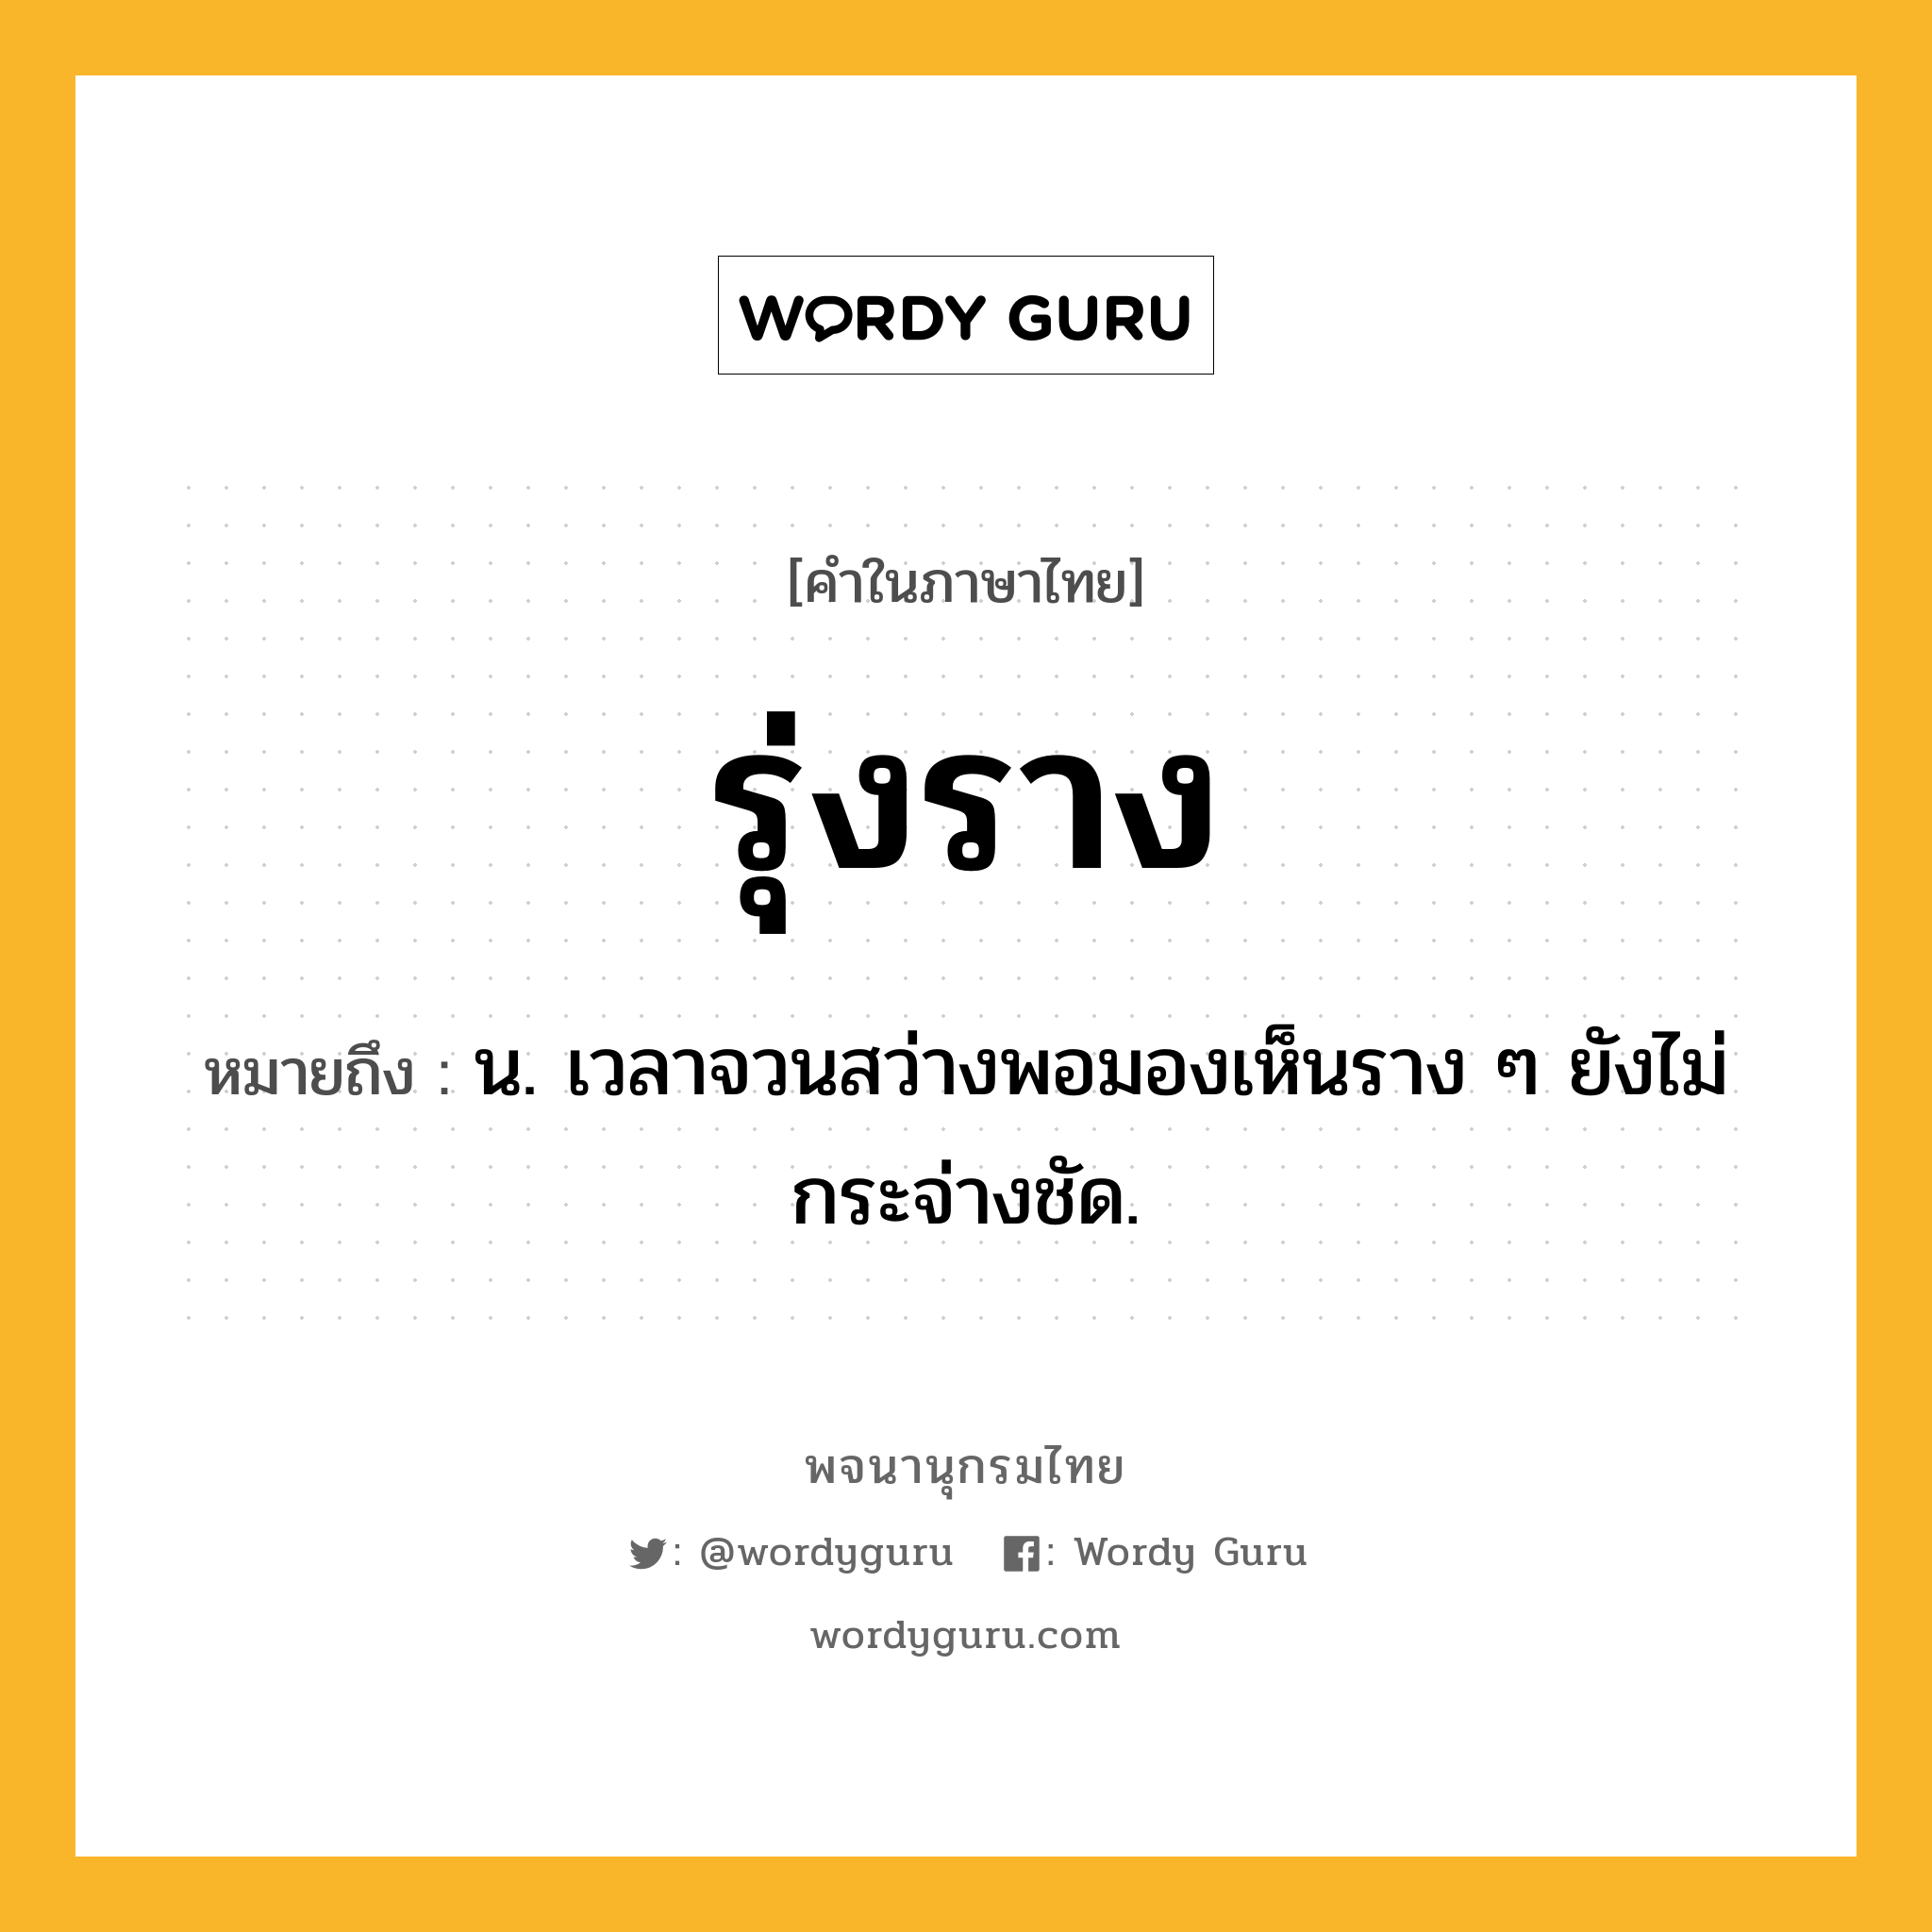 รุ่งราง ความหมาย หมายถึงอะไร?, คำในภาษาไทย รุ่งราง หมายถึง น. เวลาจวนสว่างพอมองเห็นราง ๆ ยังไม่กระจ่างชัด.